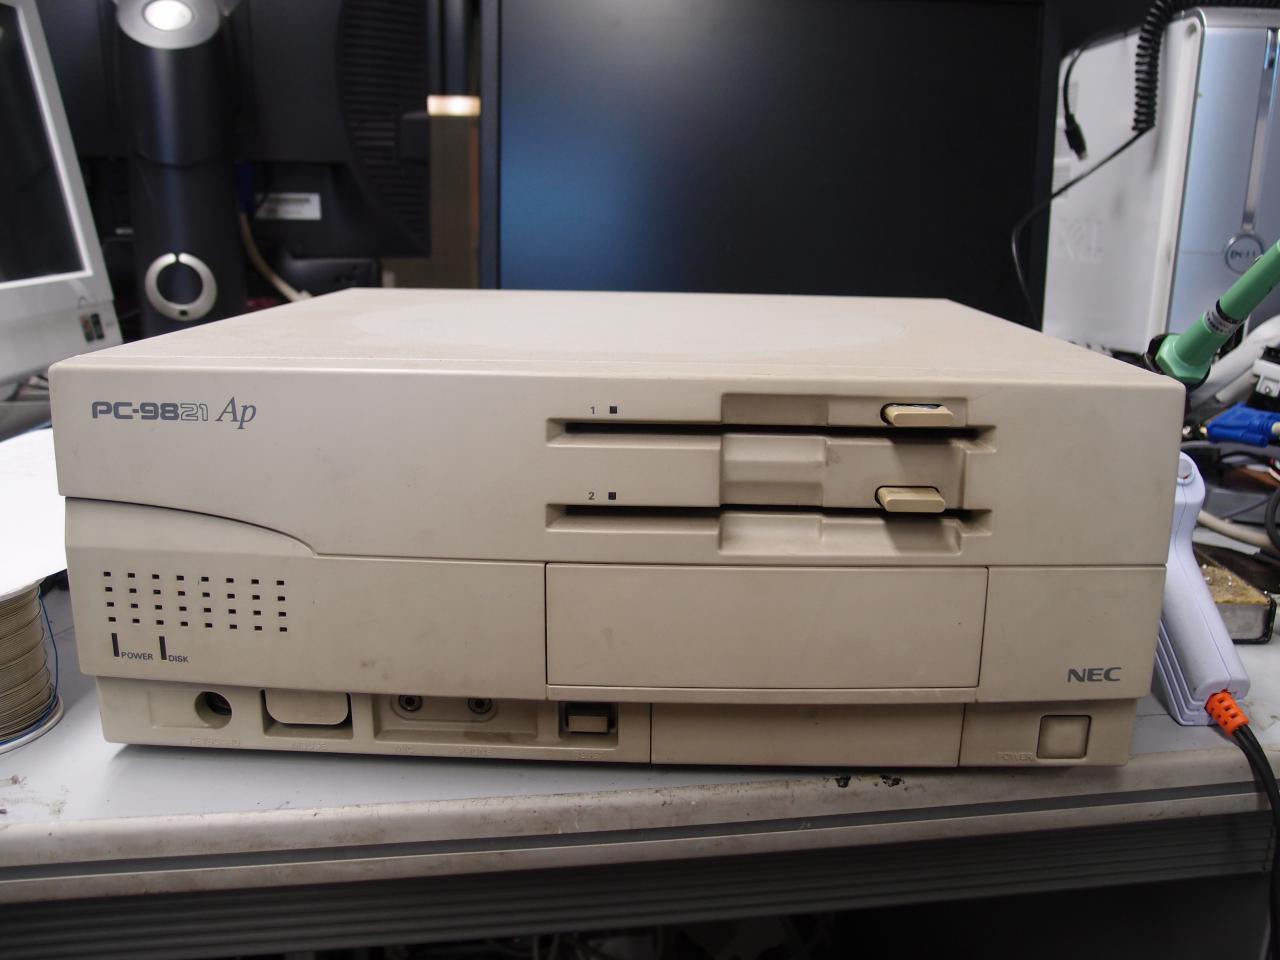 NEC PC-9821 AP3/M2 - パソコン